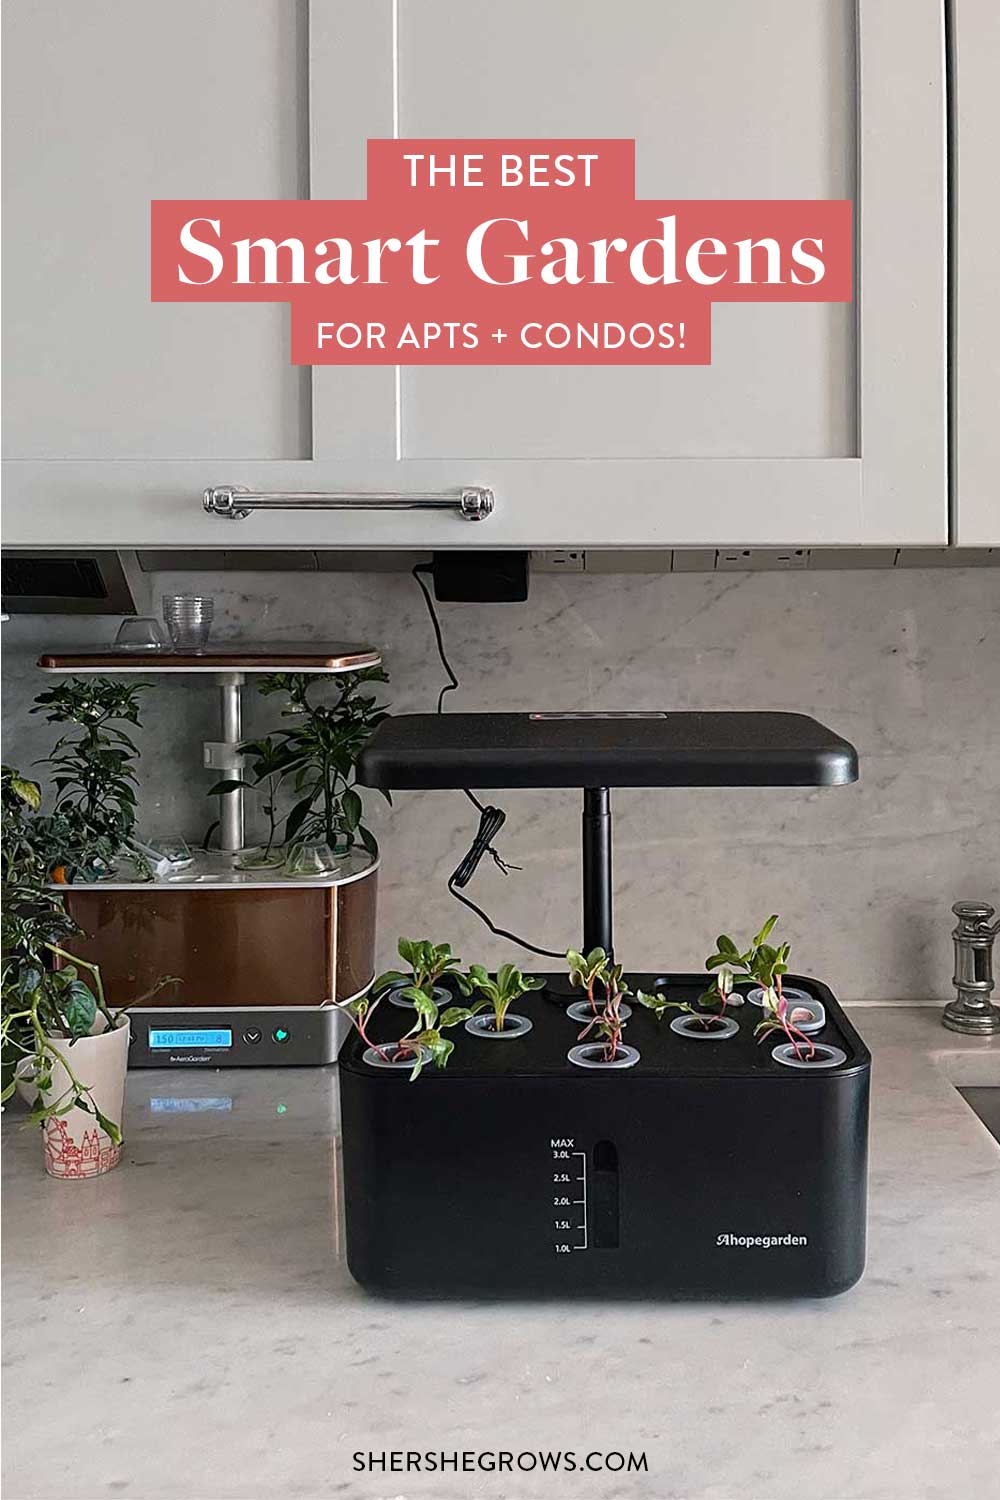 ahopegarden-indoor-smart-garden-review